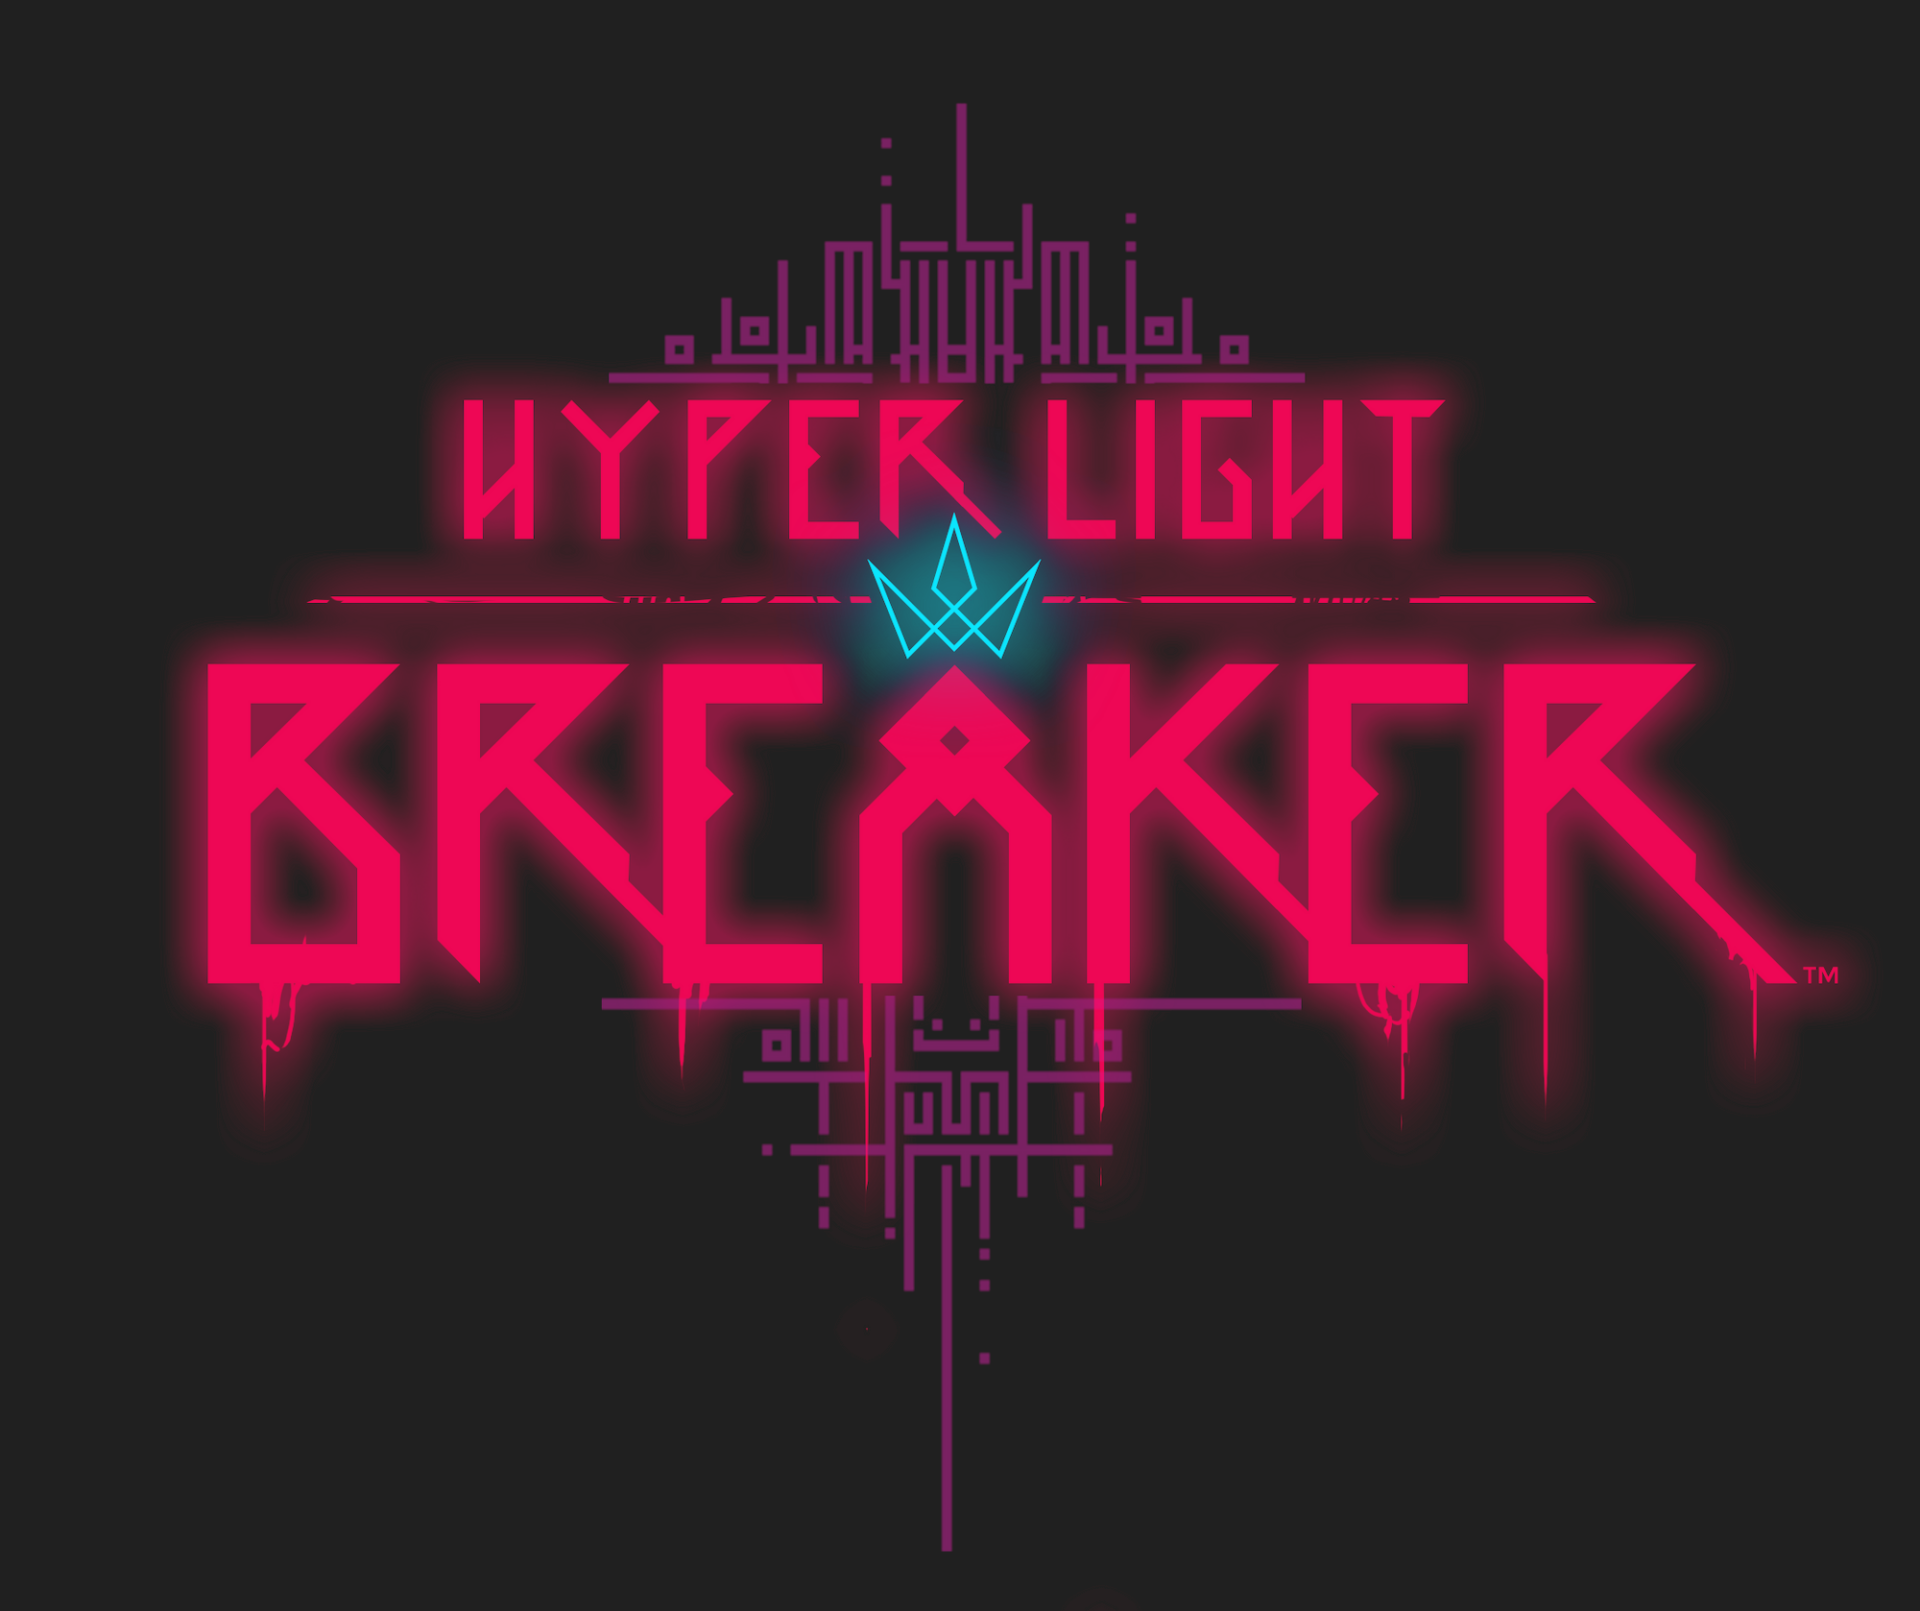 hyper light breaker release date